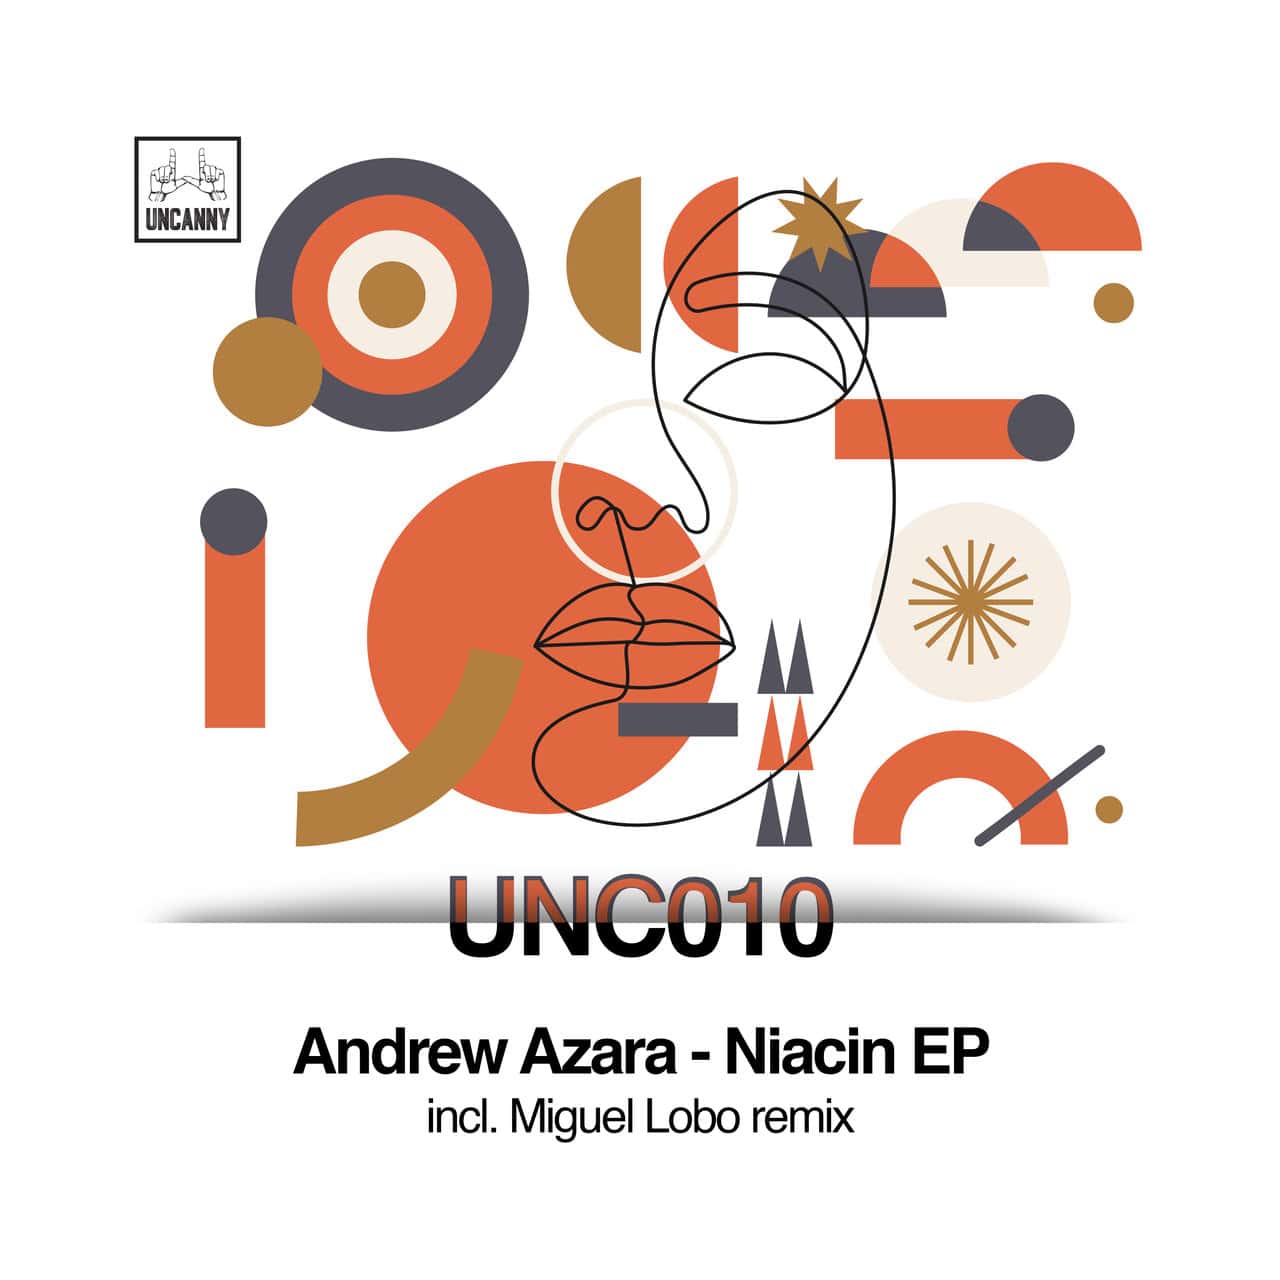 image cover: Andrew Azara - Niacin EP / UNCANNY